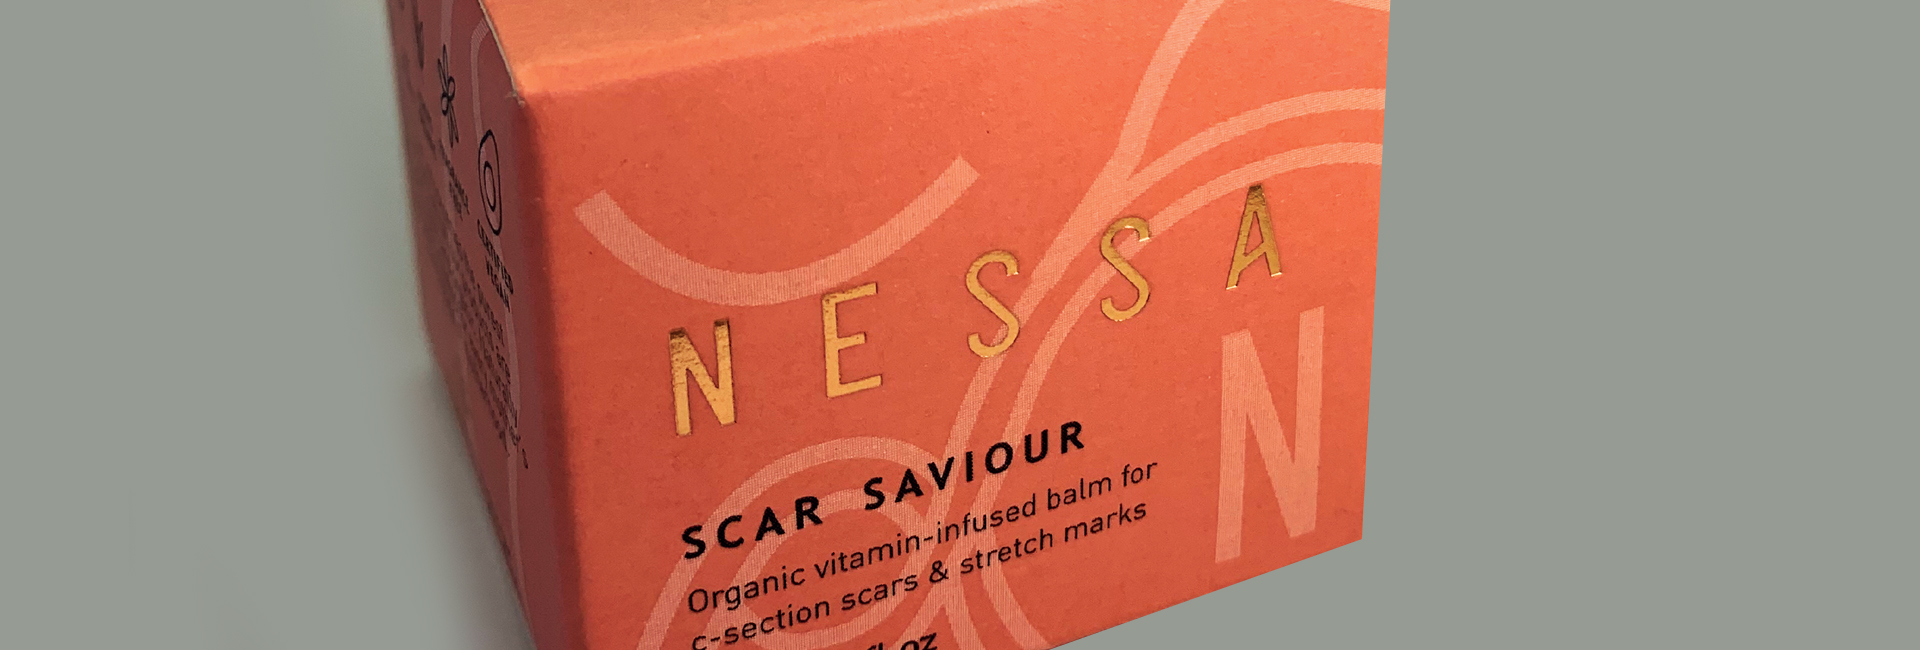 Nessa – Scar Saviour